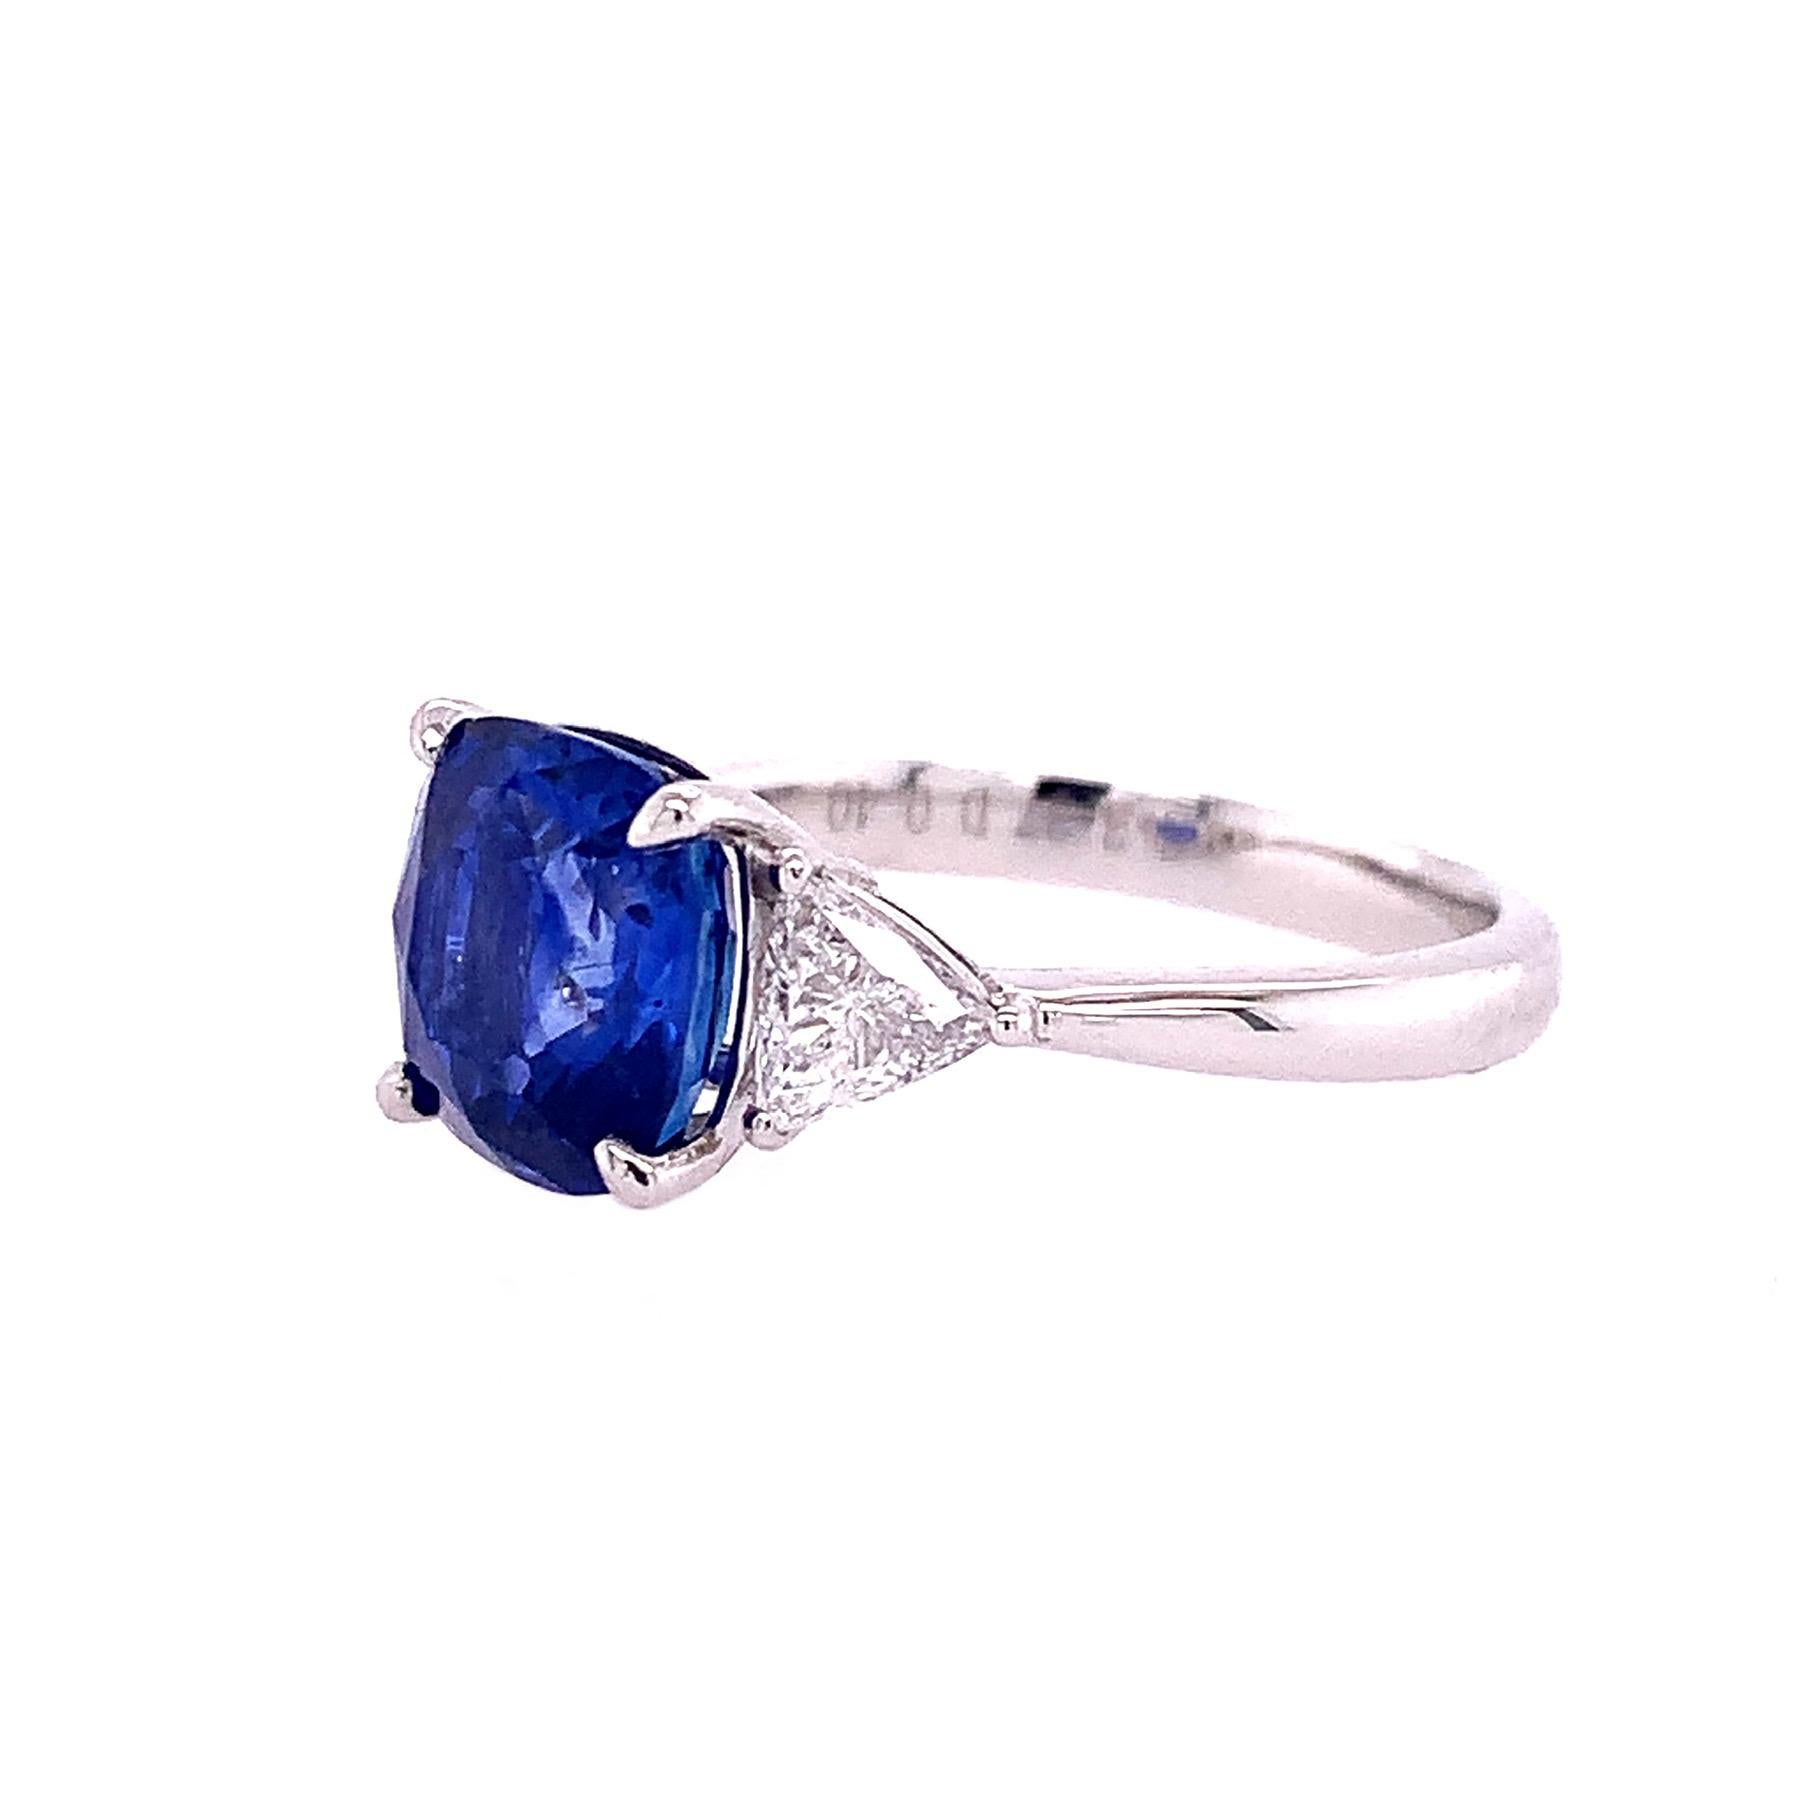 Cushion blauer Saphir Mittelstein mit Dreieck Form Diamanten Ring in Platin gesetzt. 

Ringgröße: 6,5U.S.
Blauer Saphir : 3,37ct Gesamtgewicht.
Diamant: 0,40ct Gesamtgewicht.
Alle Diamanten sind G-H/SI-Steine.
